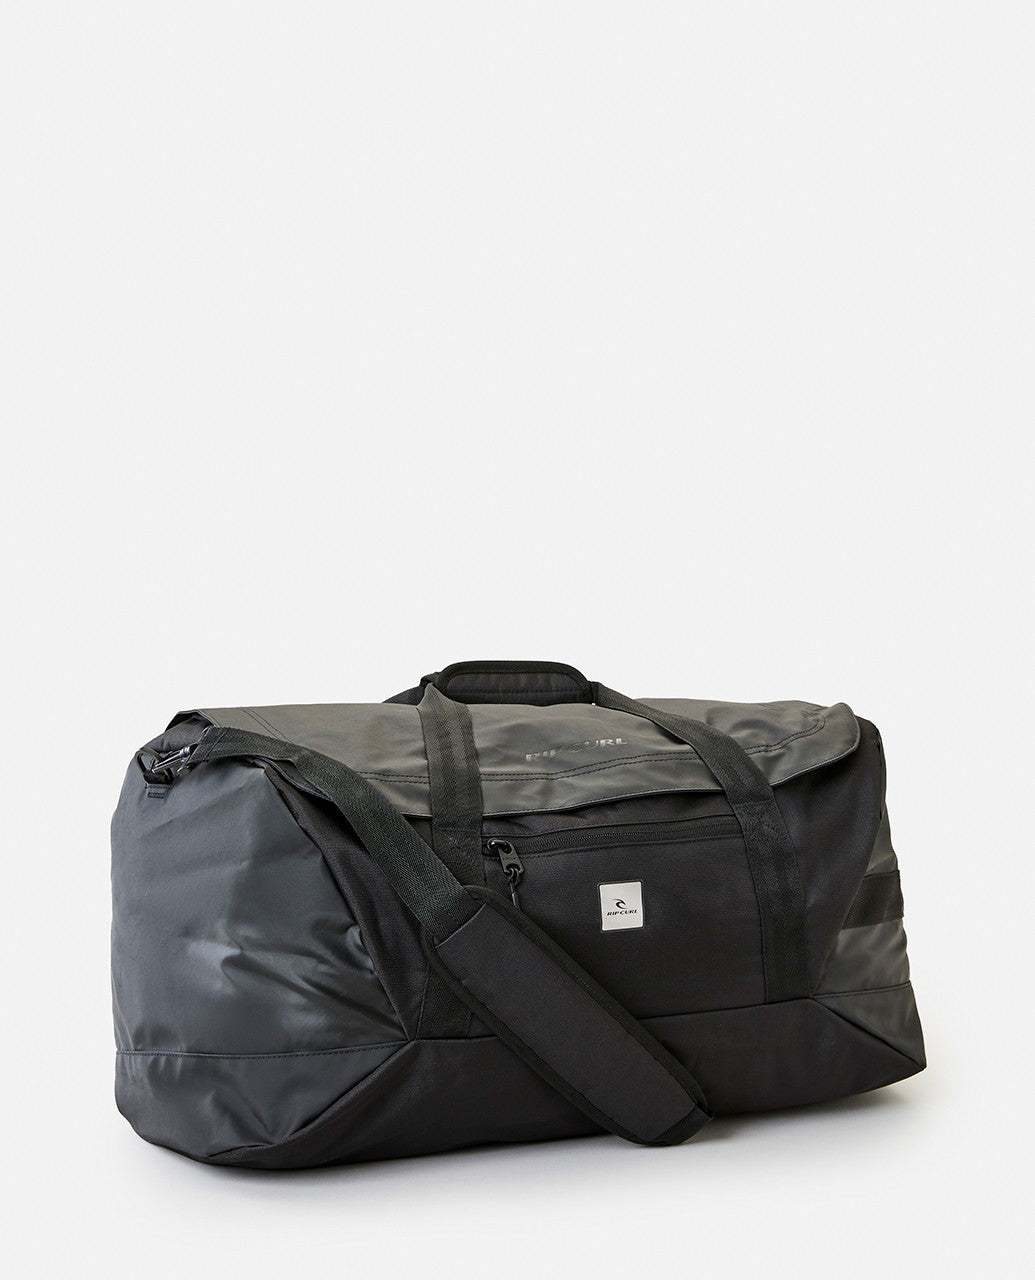 Duffle 50L Midnight Travel Bag